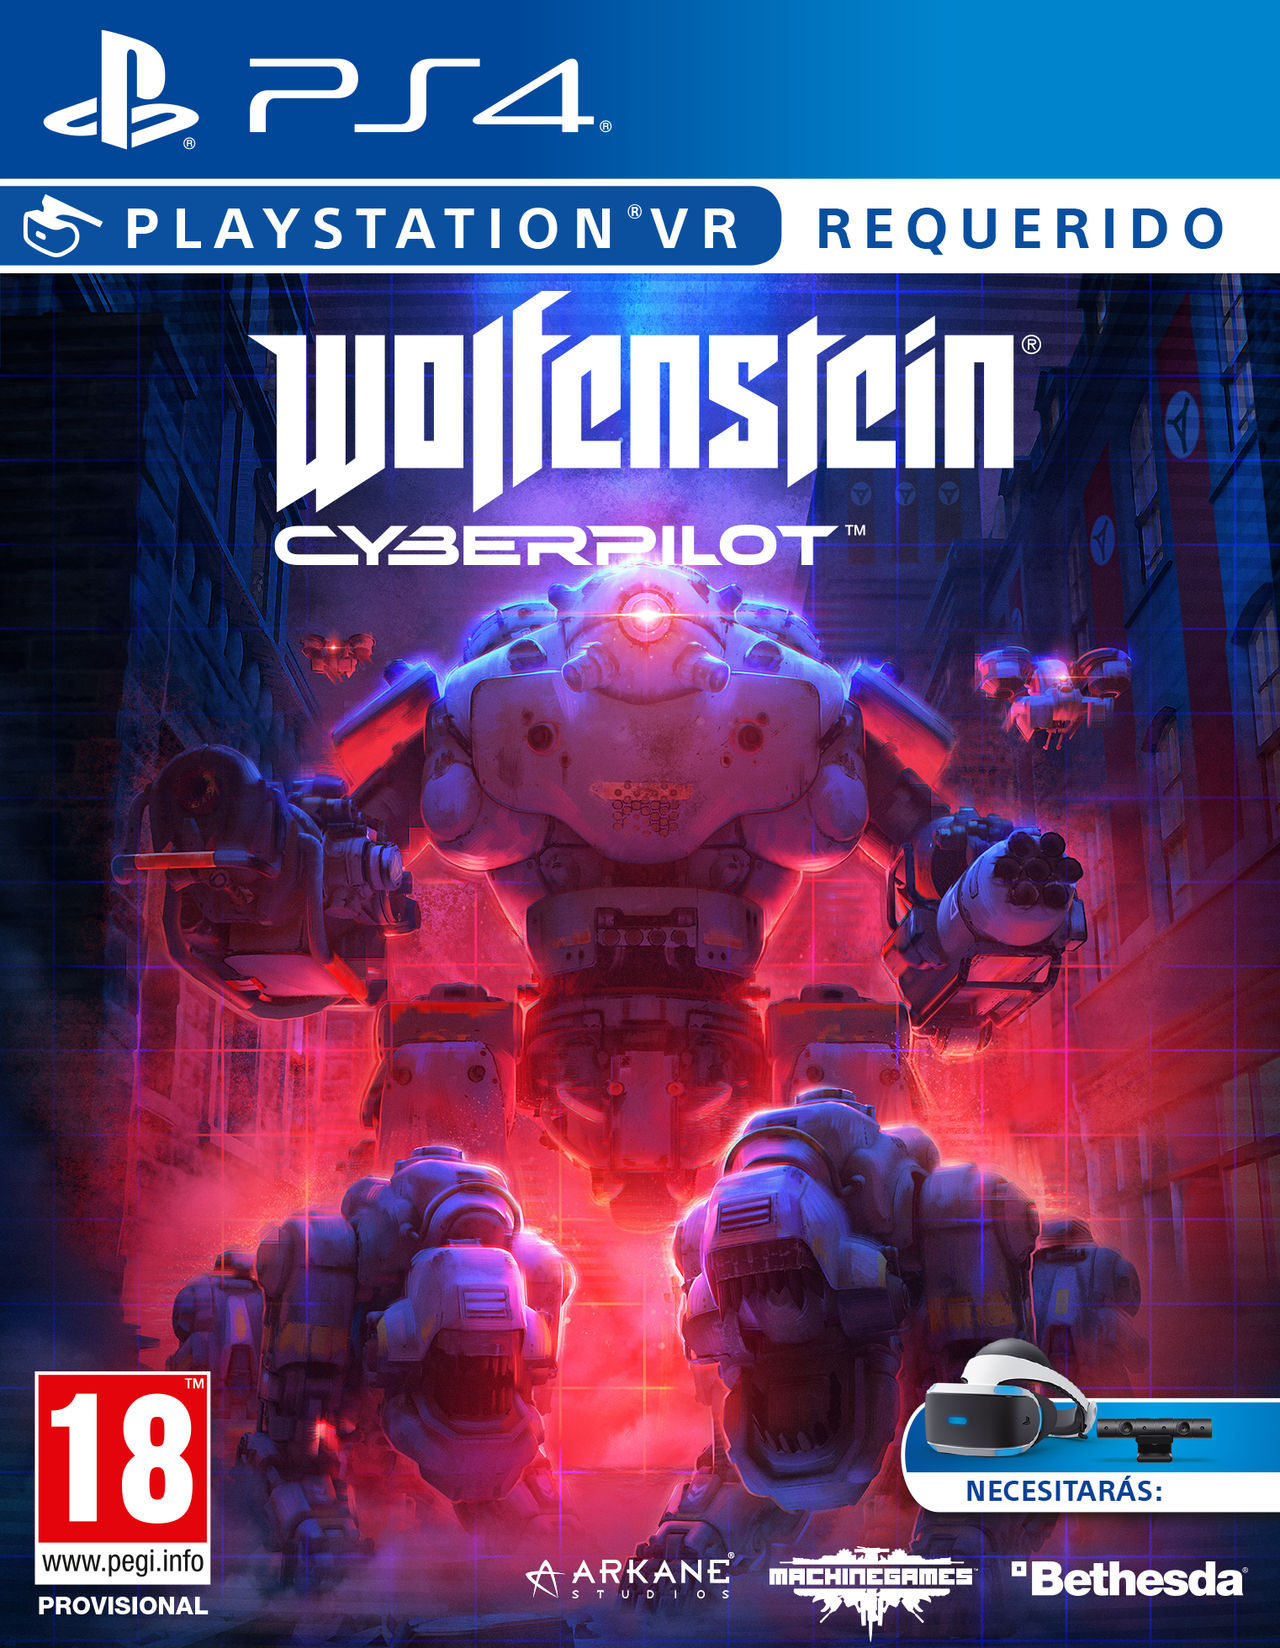 calendario Desigualdad Examinar detenidamente Wolfenstein: Cyberpilot - Videojuego (PS4 y PC) - Vandal